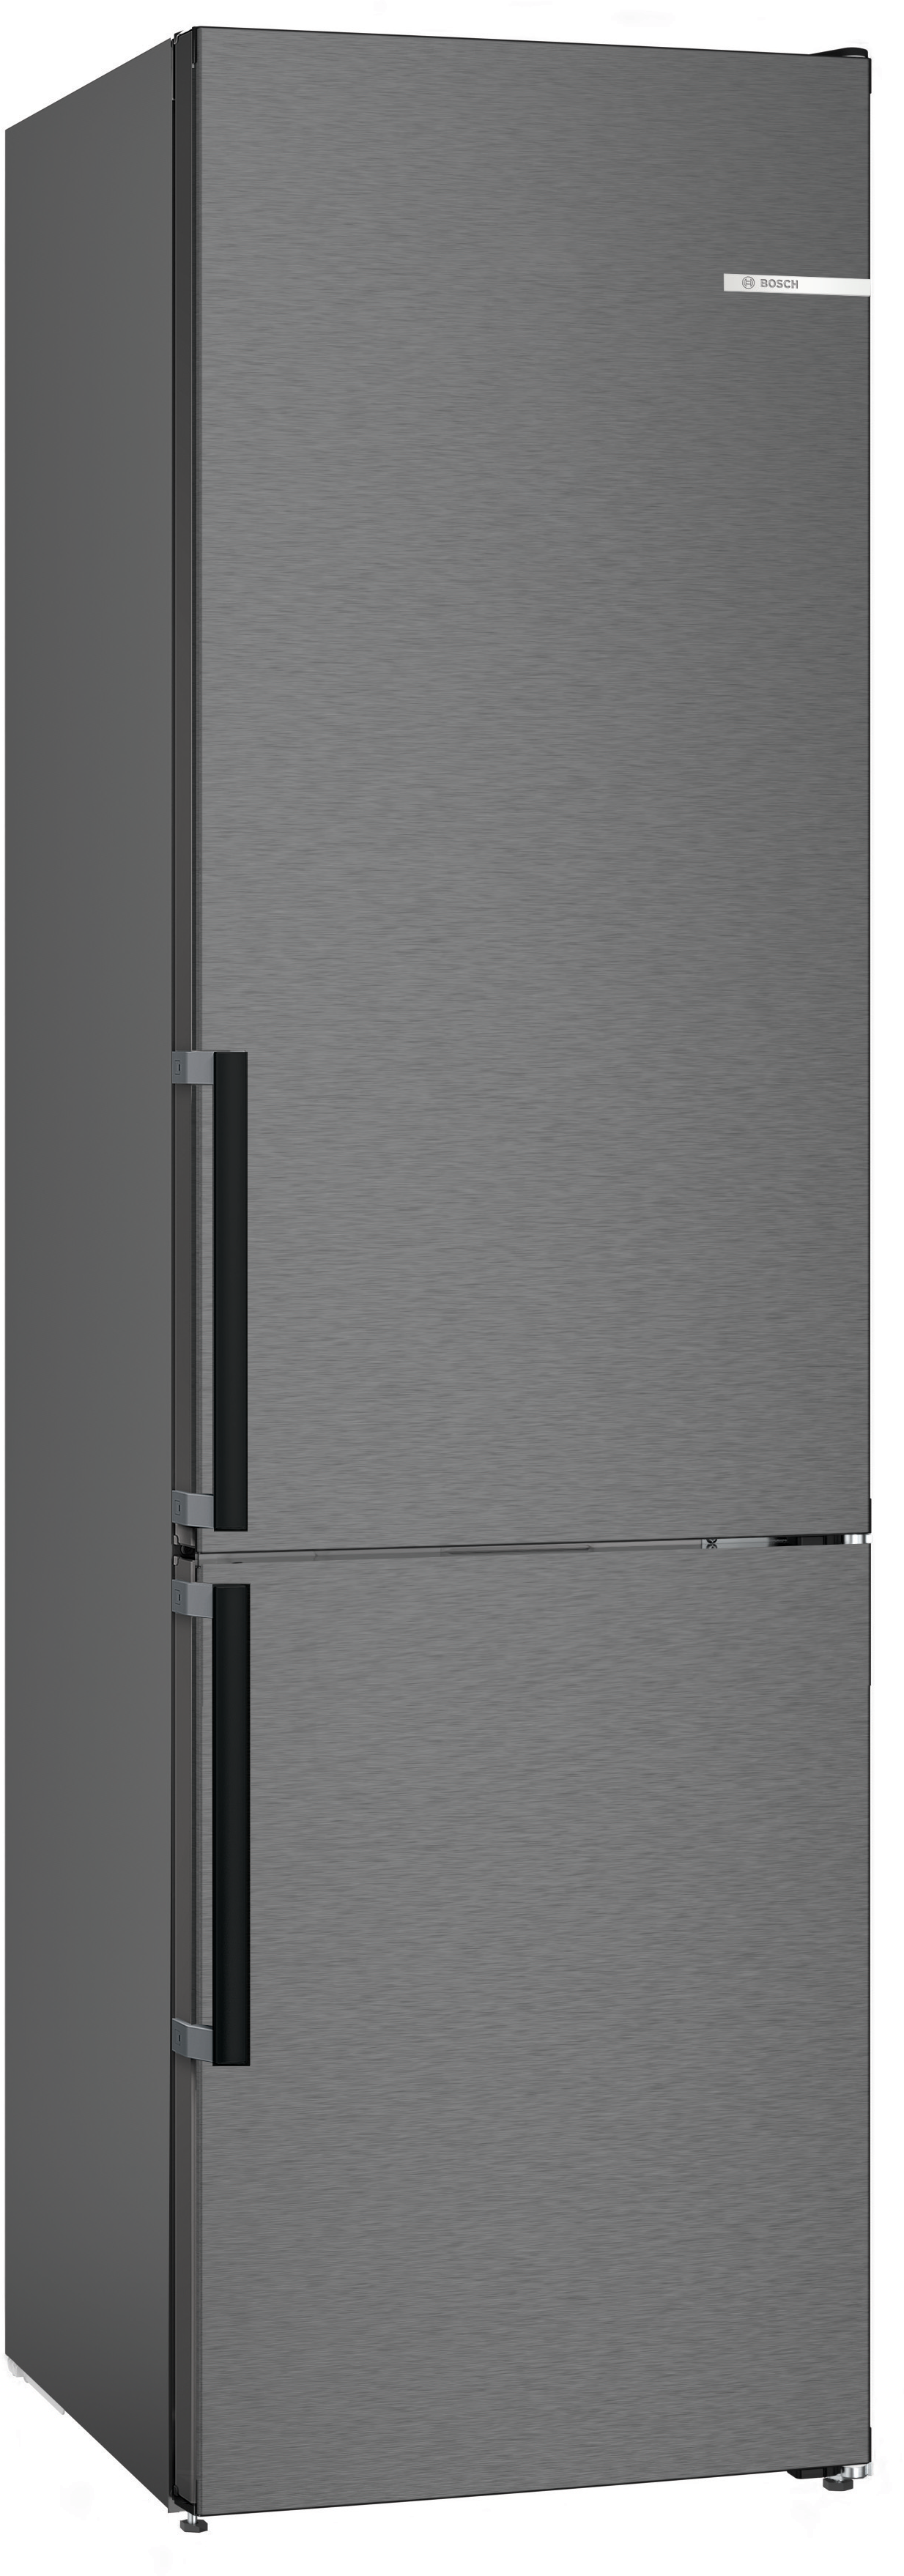 Kombinovani frižider sa zamrzivačem KGN39VXCT Serie 4, XXL